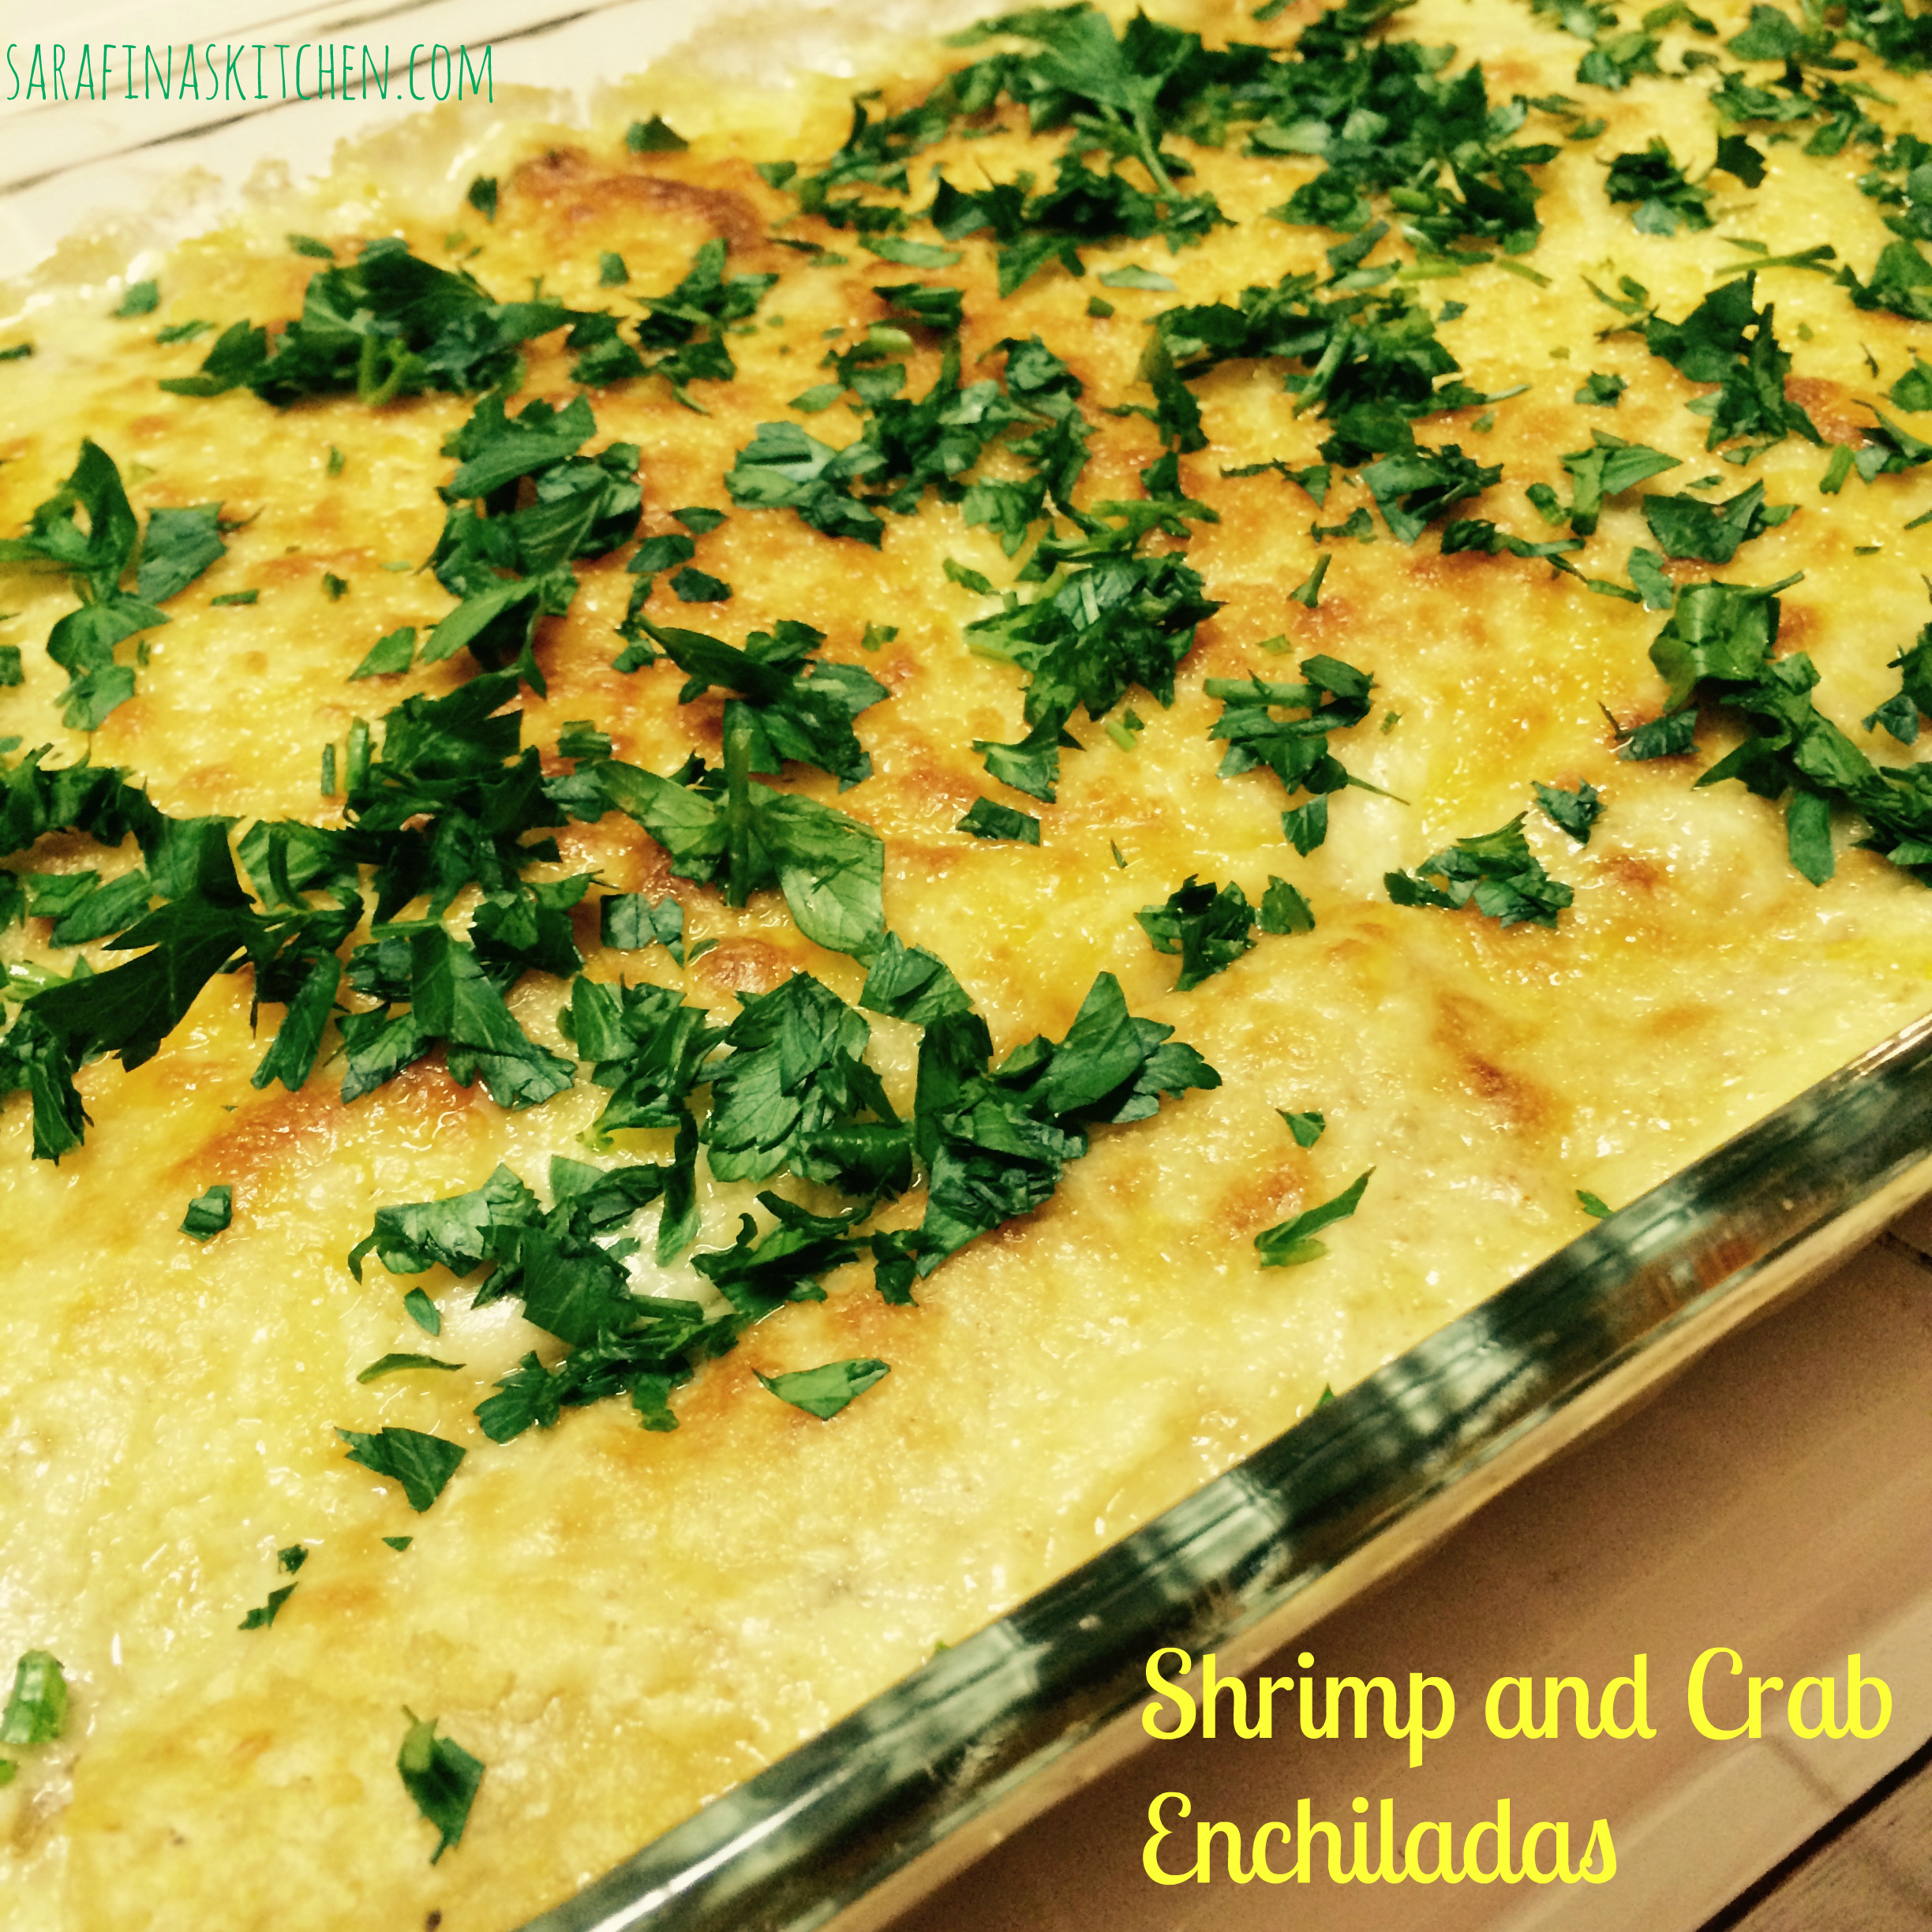 Shrimp and Crab Enchiladas | Sarafina's Kitchen